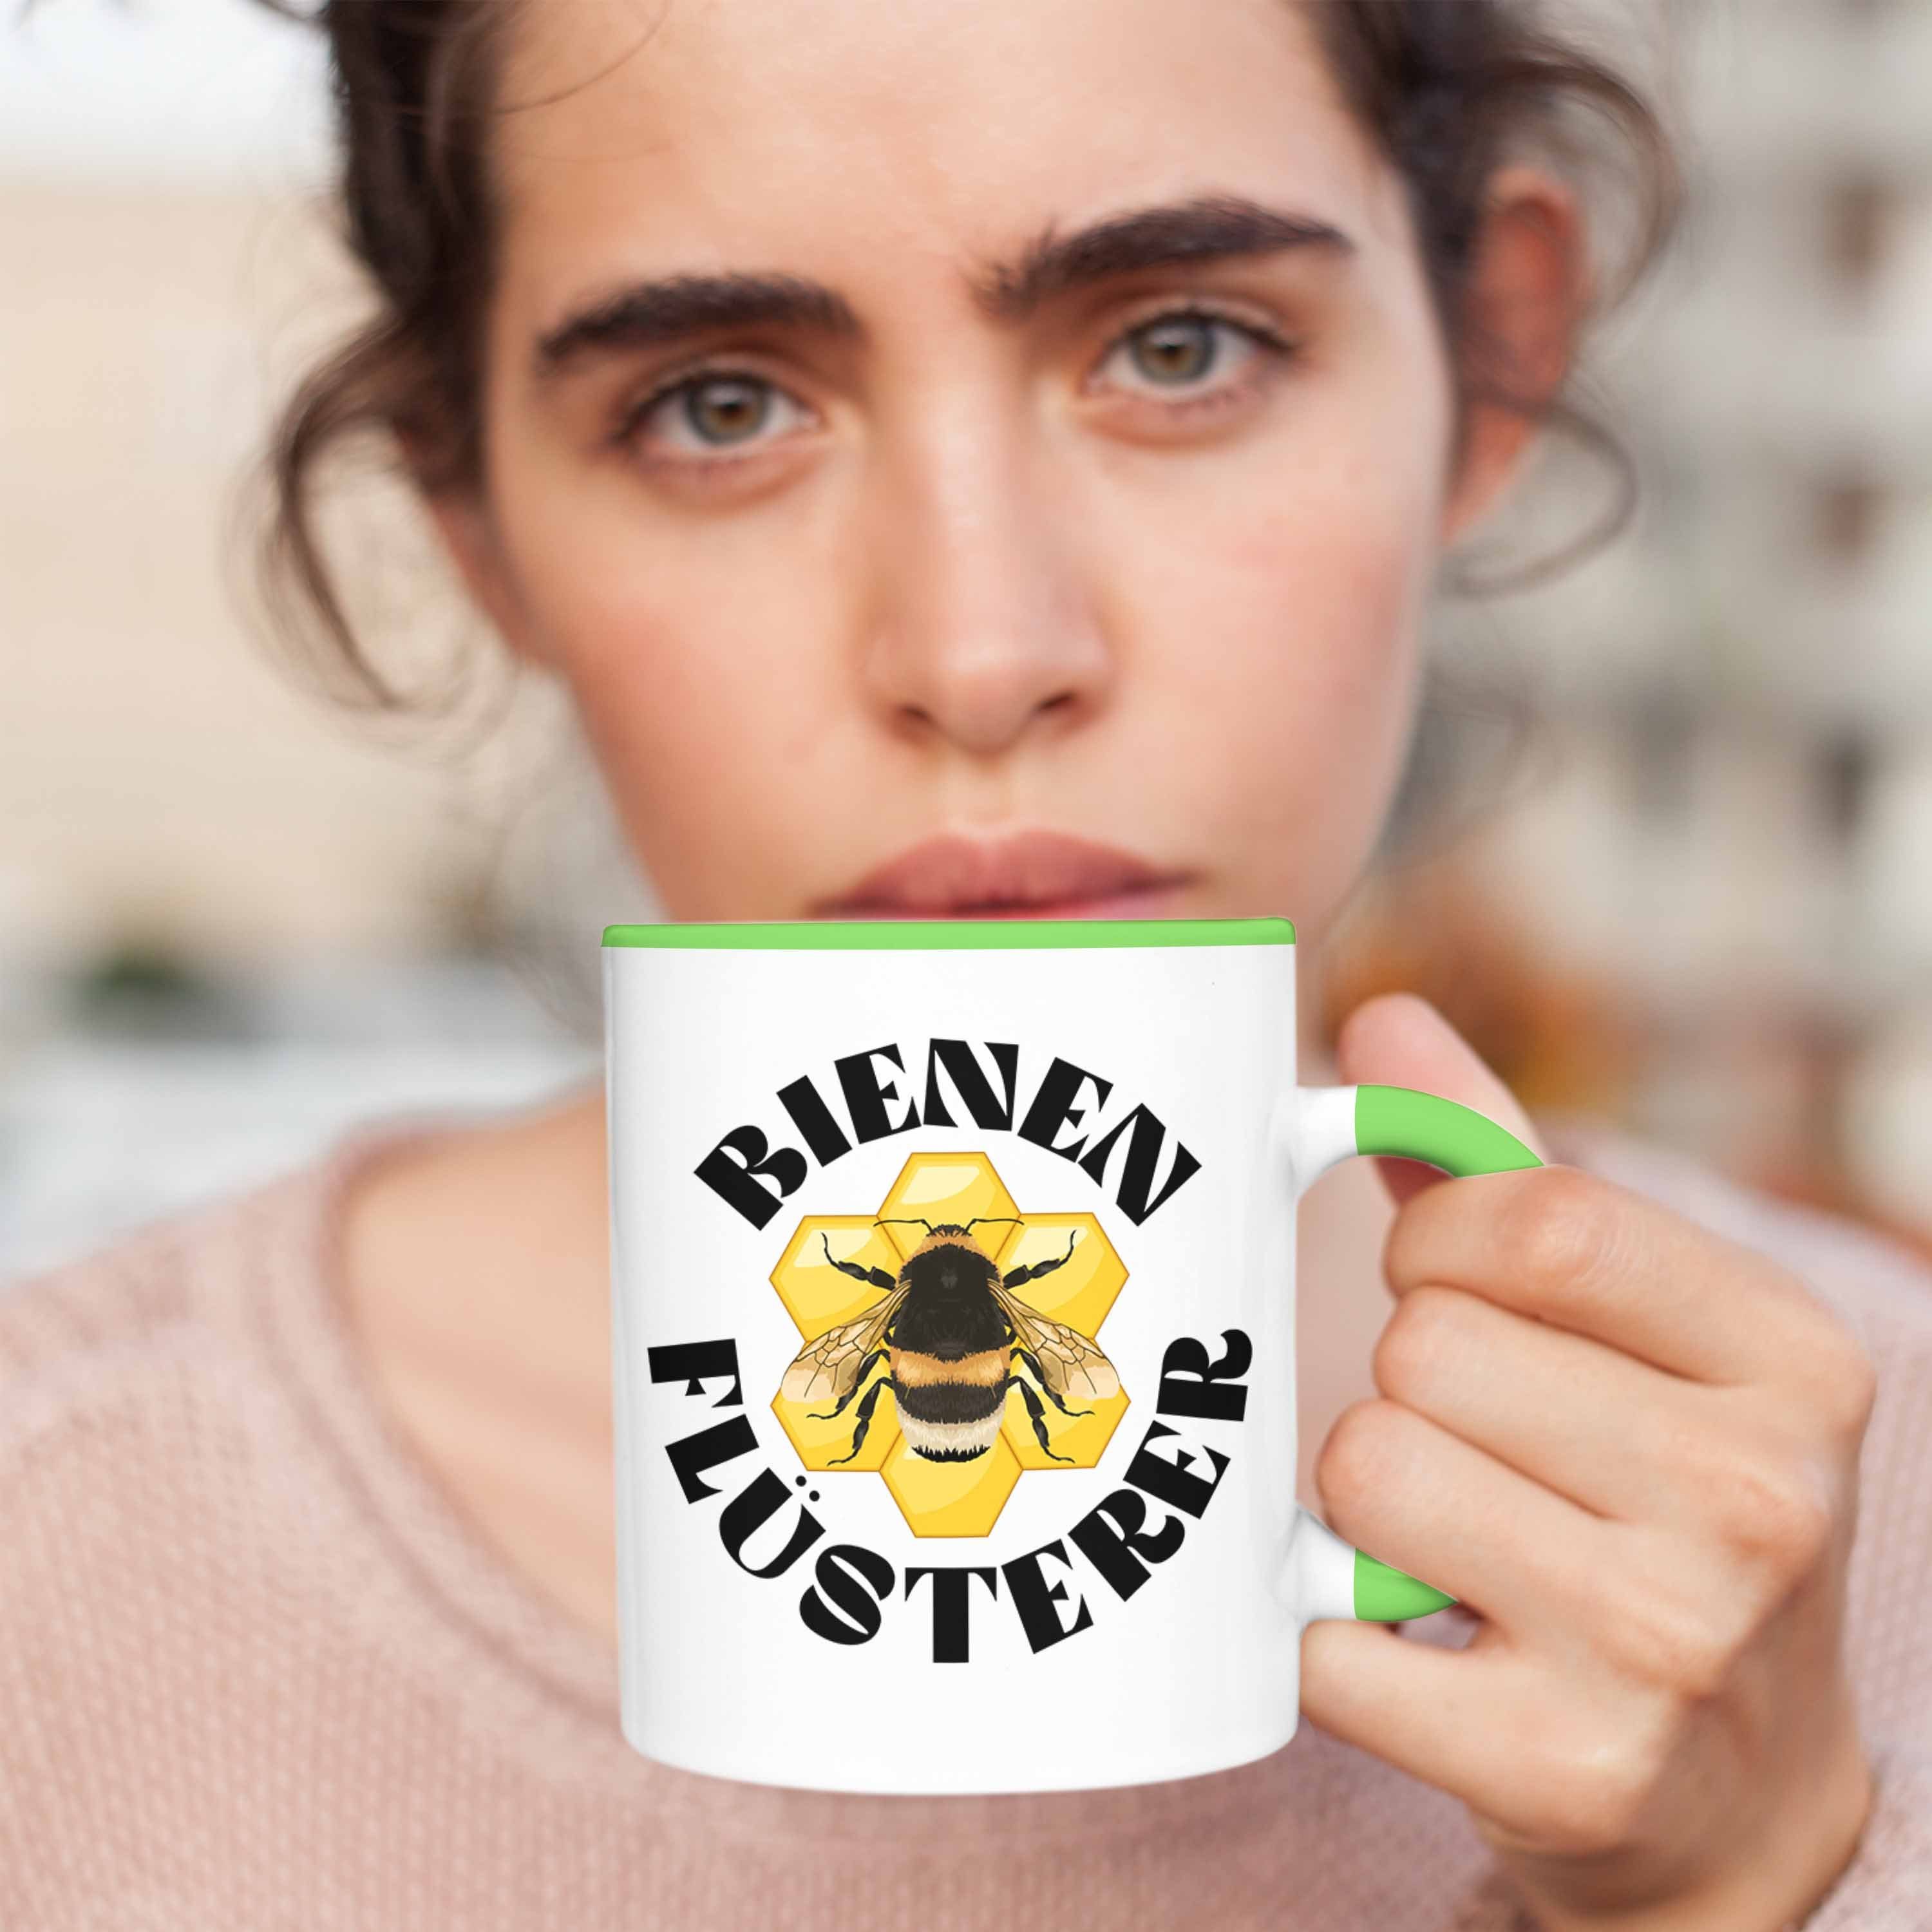 Zuebhör Imker Trendation Bienenzucht - Kaffeetasse Grün Geschenke Geschenkideen Trendation Tasse Bienen Geschenke Bienenzüchter Lustig Tasse